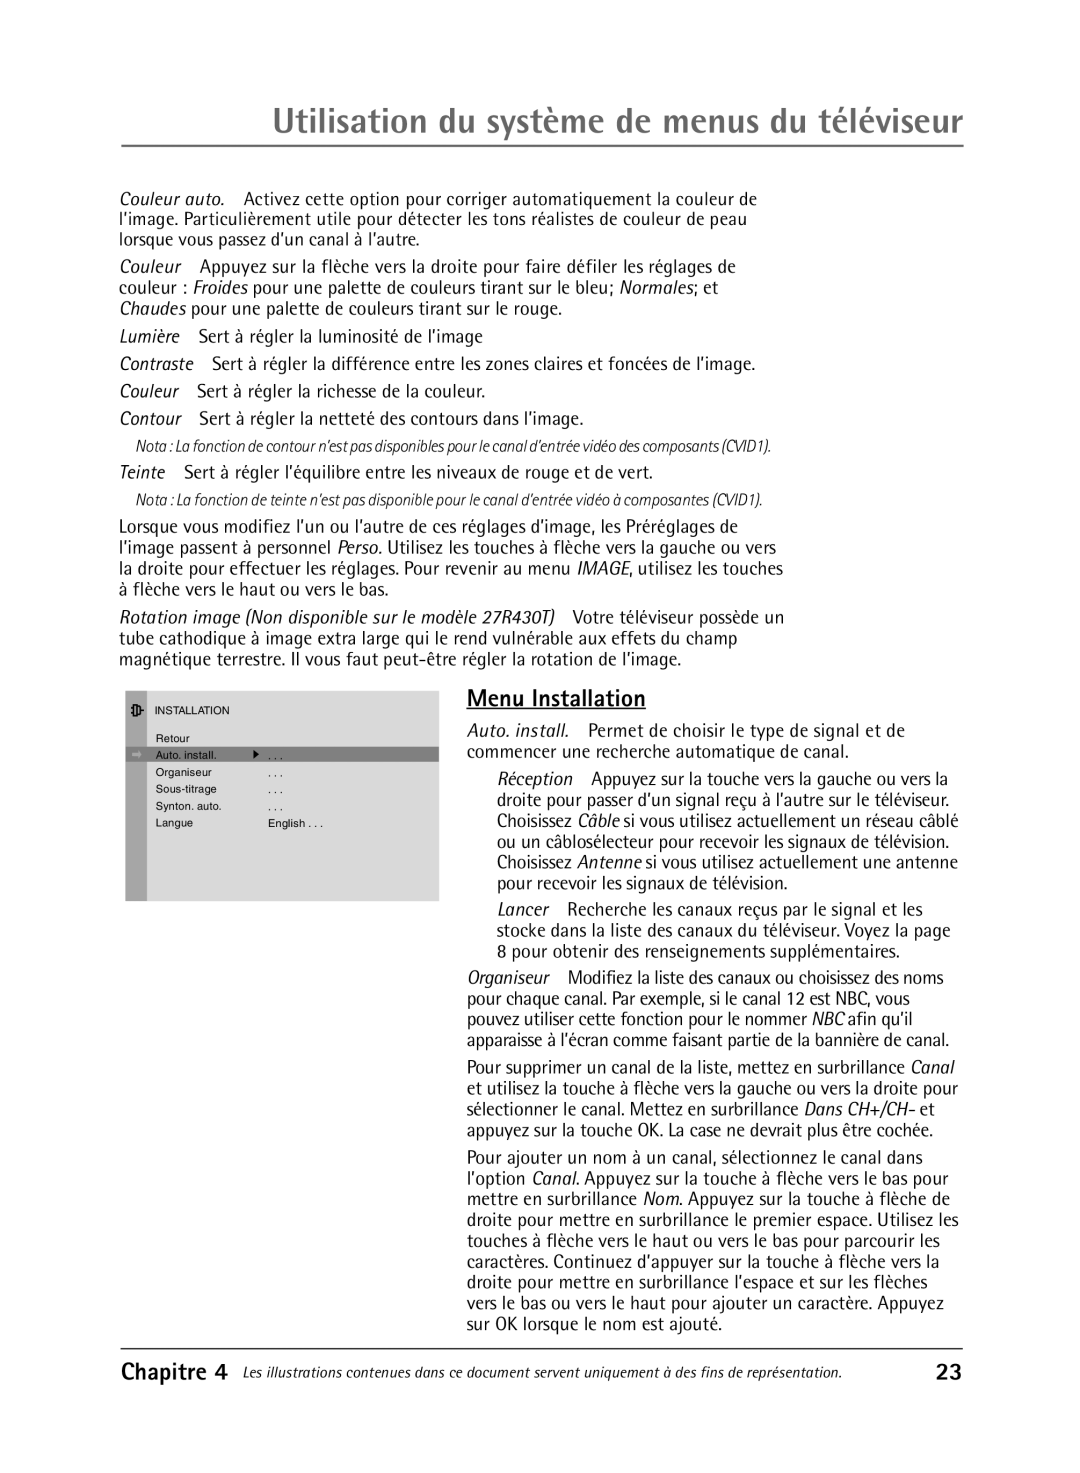 RCA 36V430T manual Utilisation du système de menus du téléviseur, Menu Installation 